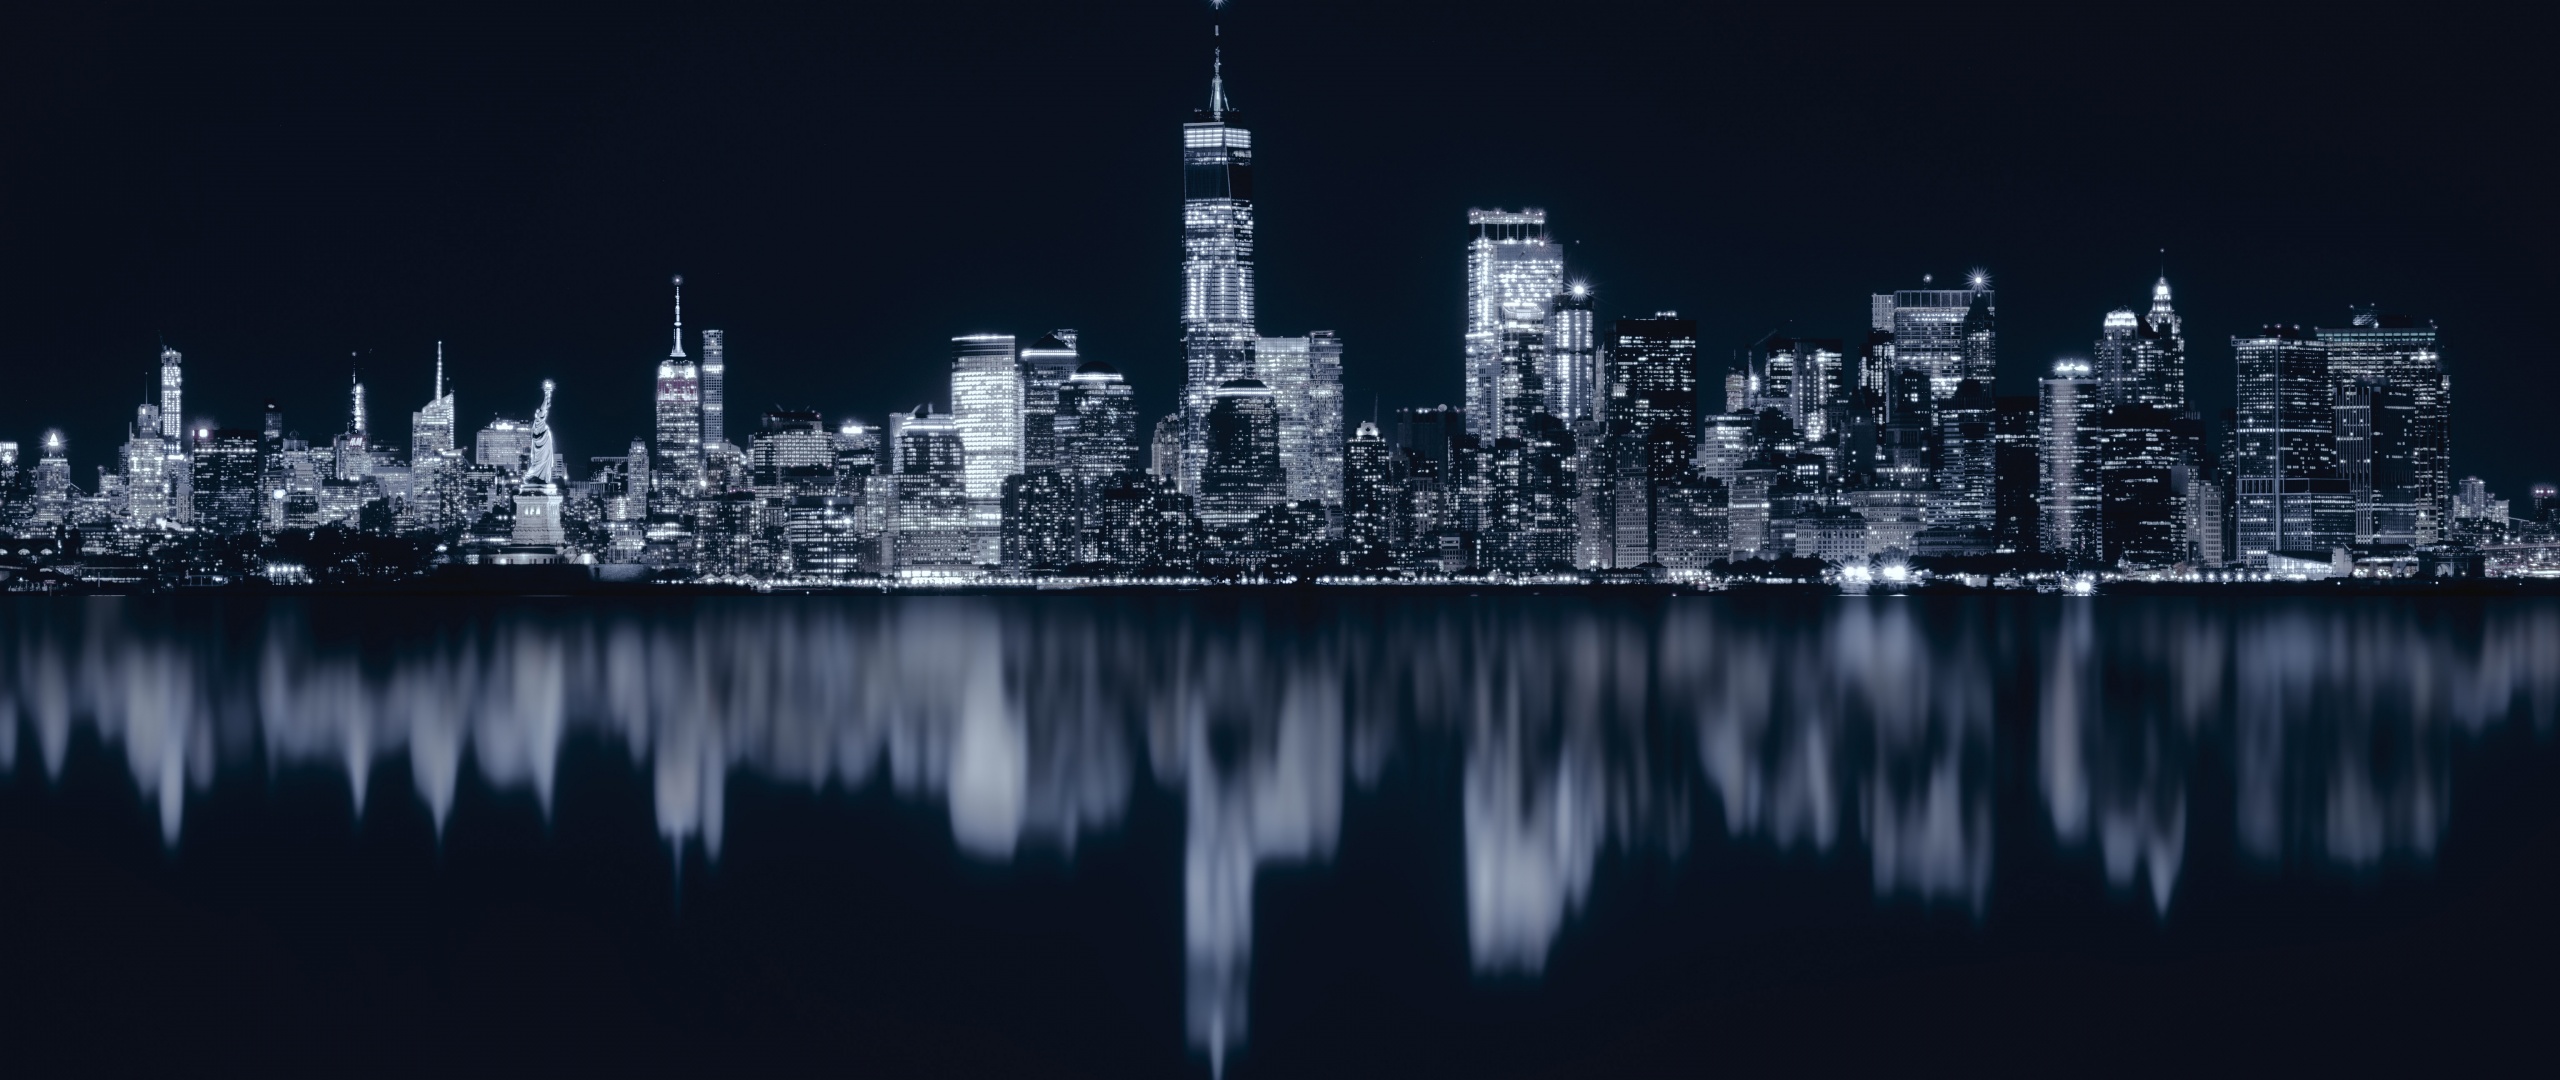 Đêm New York lung linh rực rỡ ánh đèn đầy màu sắc sẽ đưa bạn đến những khung cảnh đẹp nhất đô thị với công trình kiến trúc nổi tiếng thế giới như Empire State Building, Chrysler Building, hay cảng Manhattan. Xem hình ảnh đêm New York để trải nghiệm không khí sôi động và phấn khích của thành phố không bao giờ ngủ.